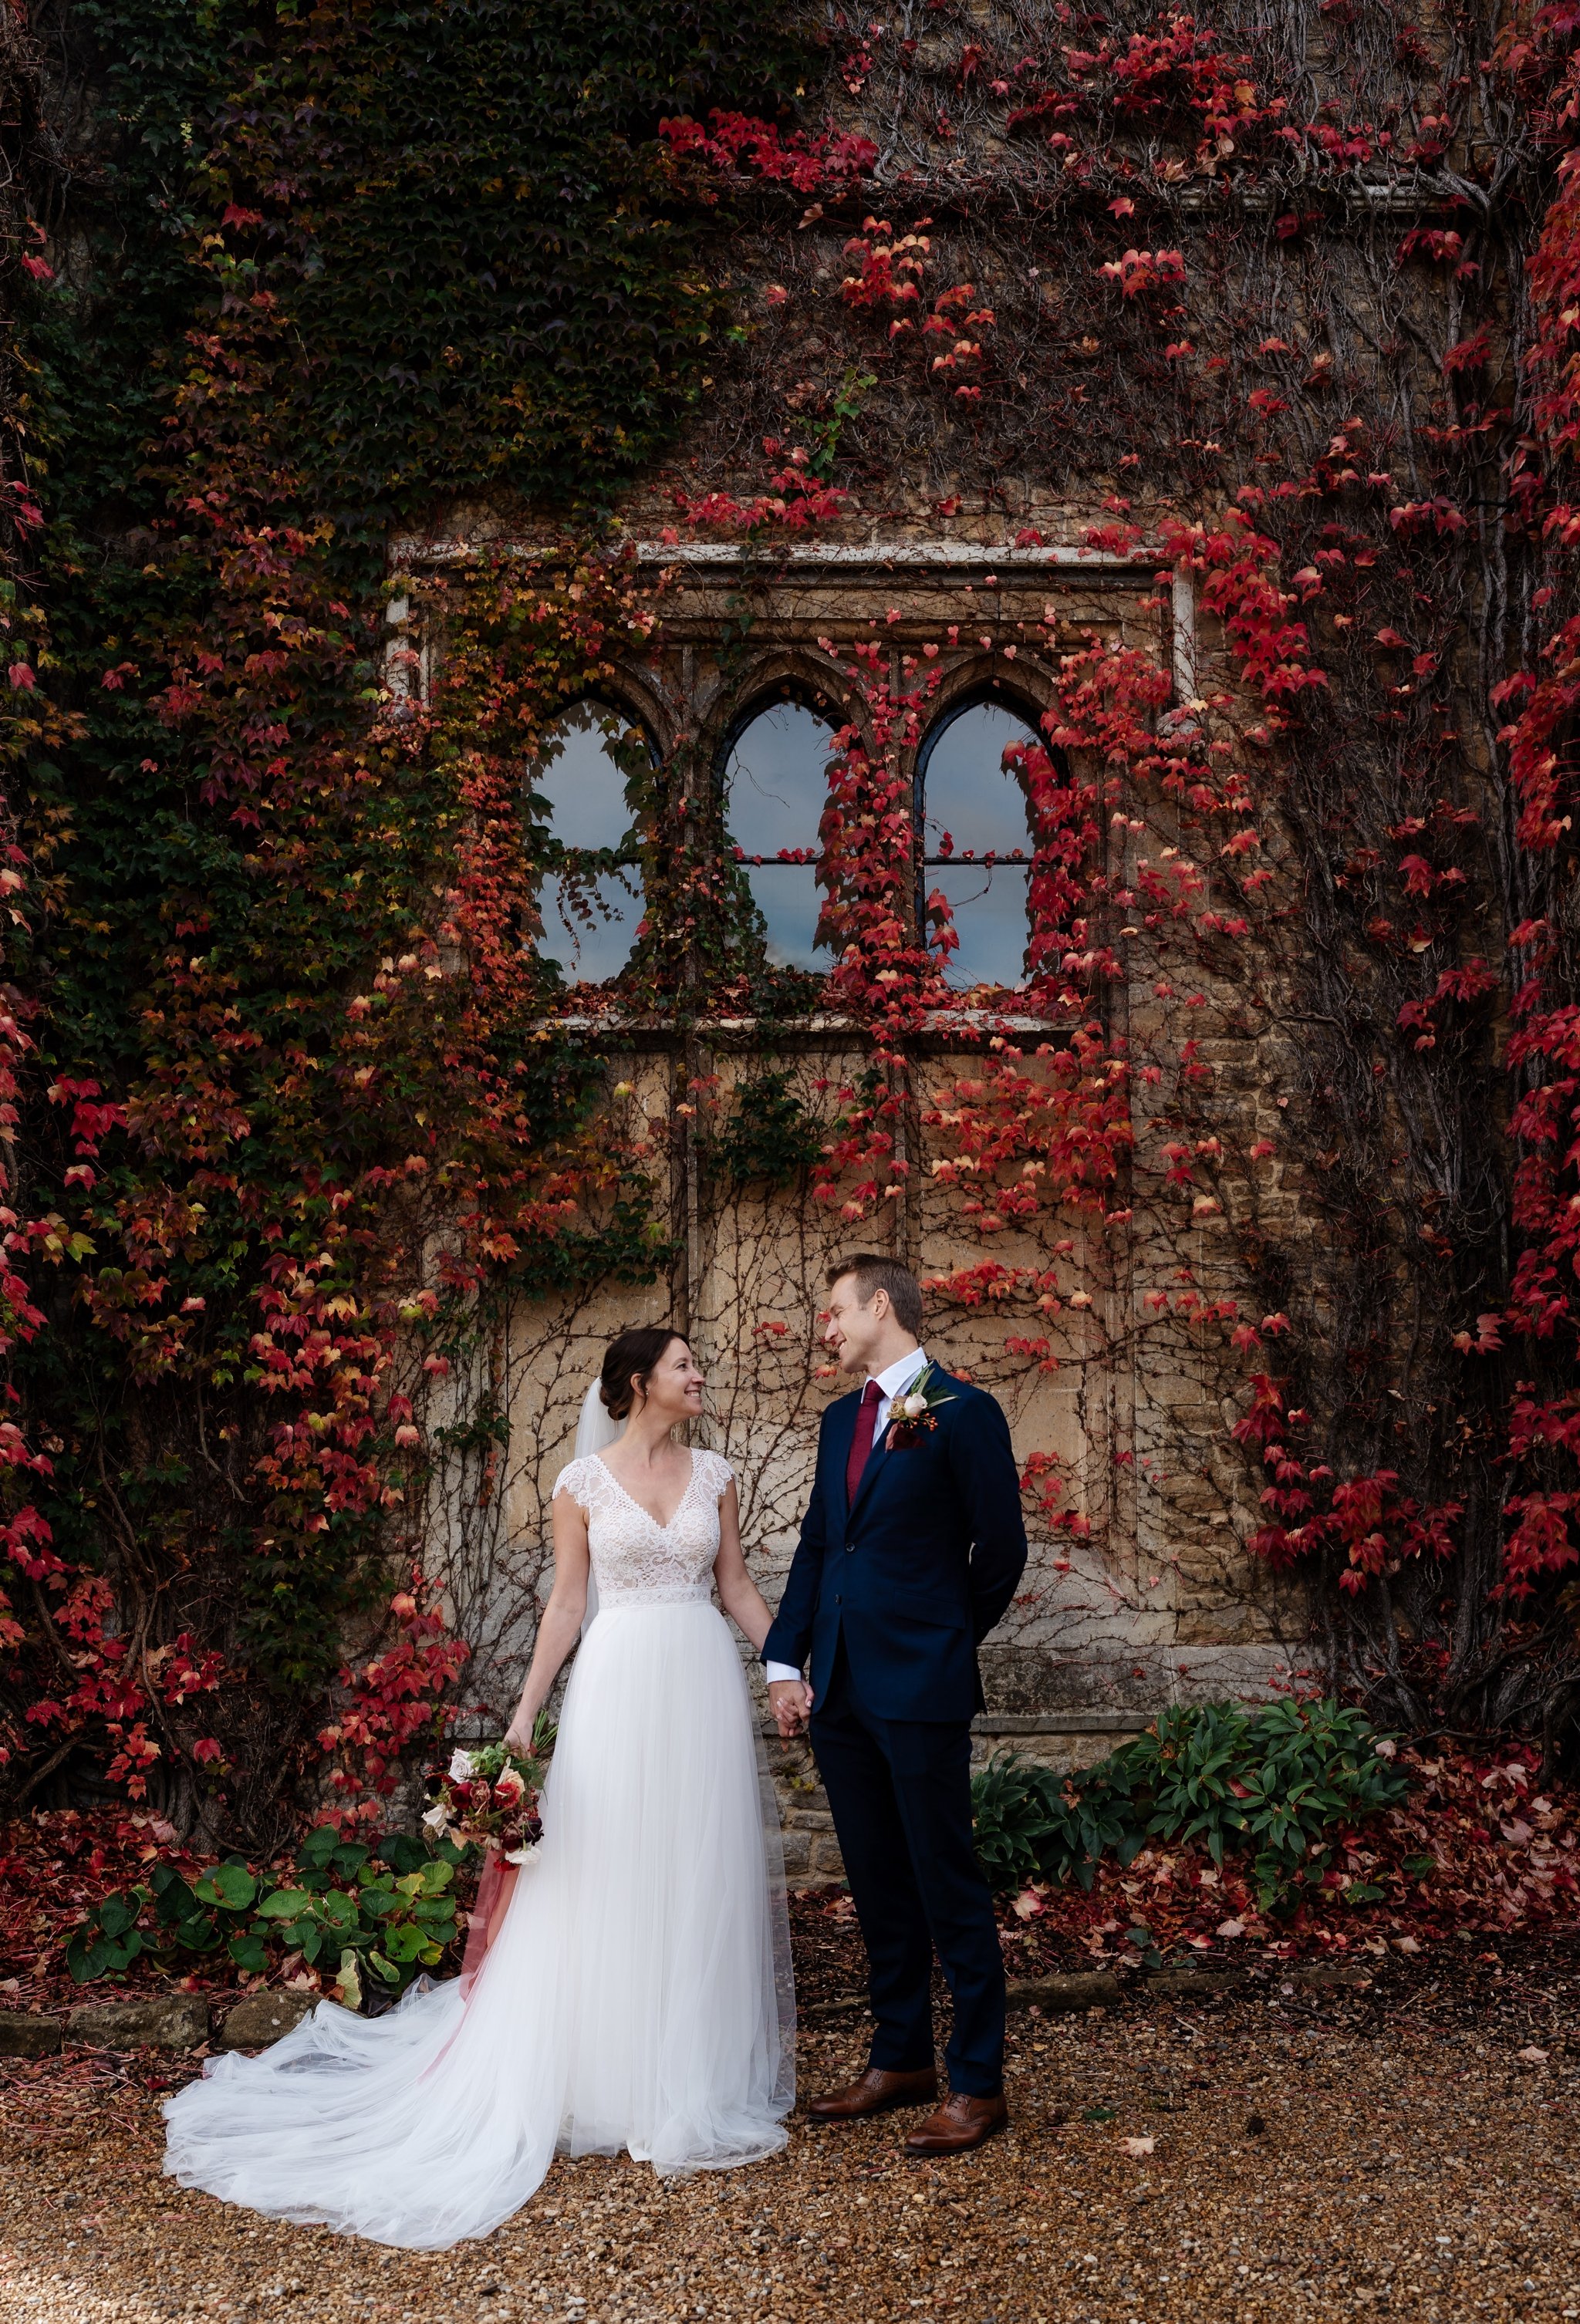 Charterhouse School Wedding Photography